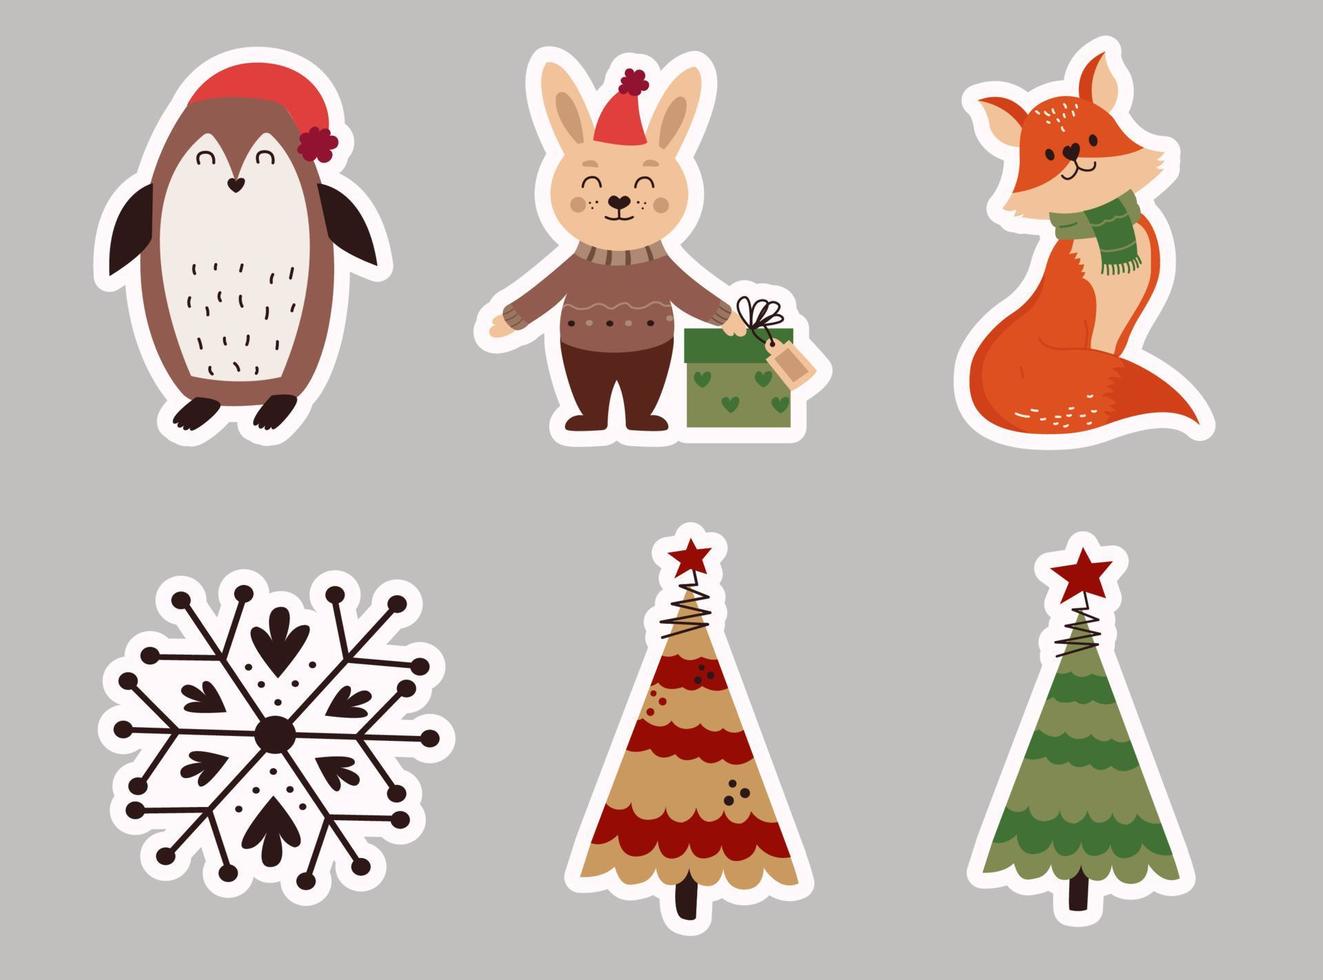 weihnachtsvektorset aus zeichentrickfiguren und aufklebern, kaninchen und pinguin. Vektor-Illustration vektor